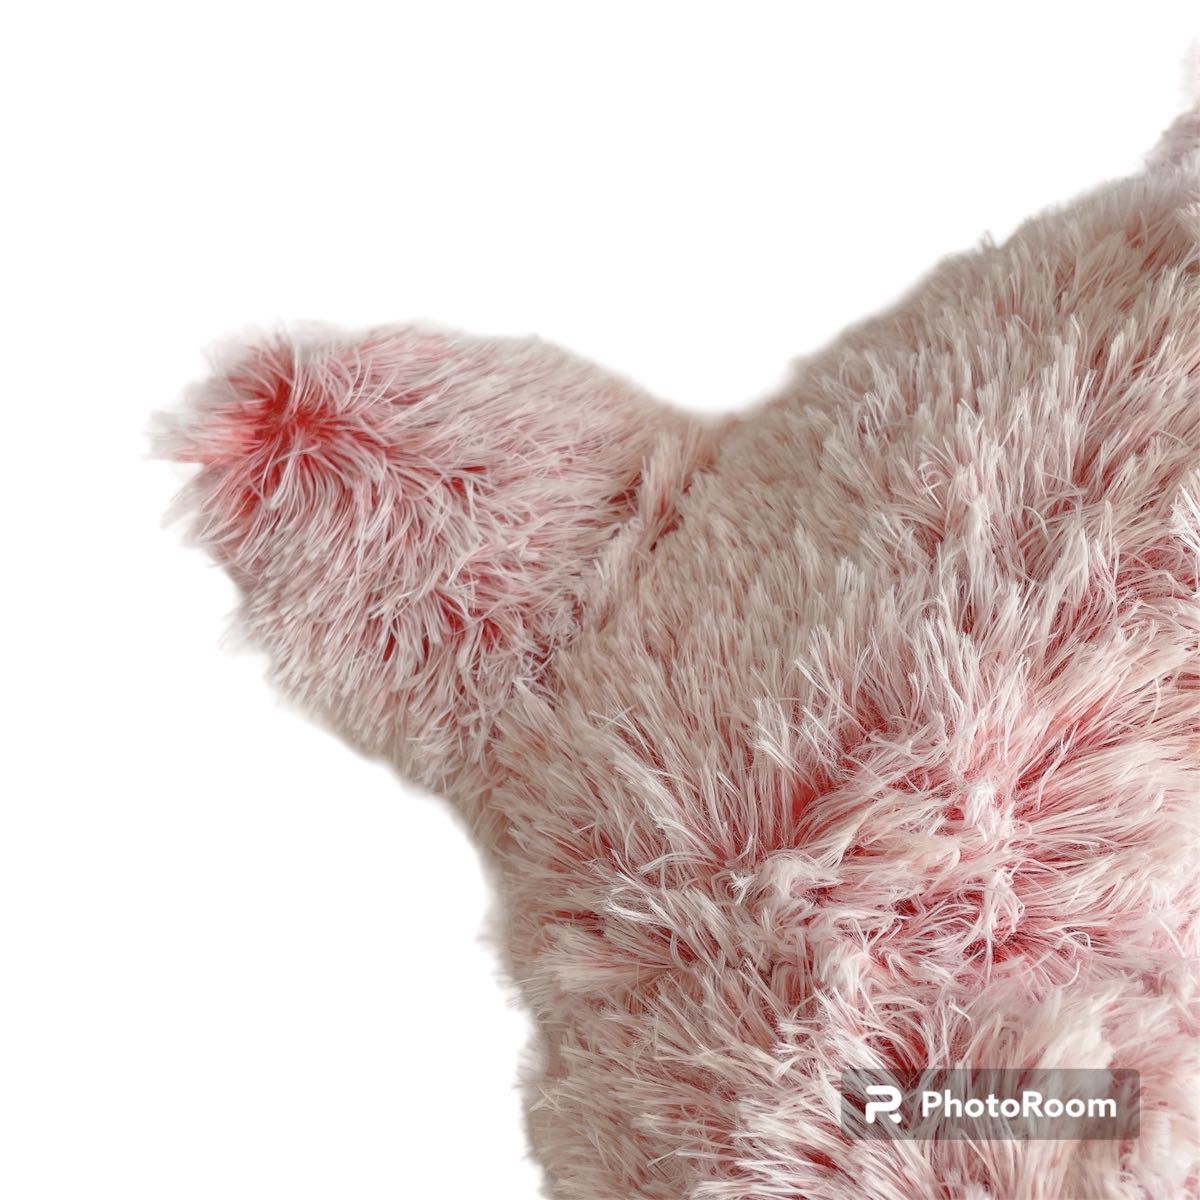 ペットベッド 猫用ベッド ふわふわ ピンク 可愛い かわいい 猫型 犬猫 小型